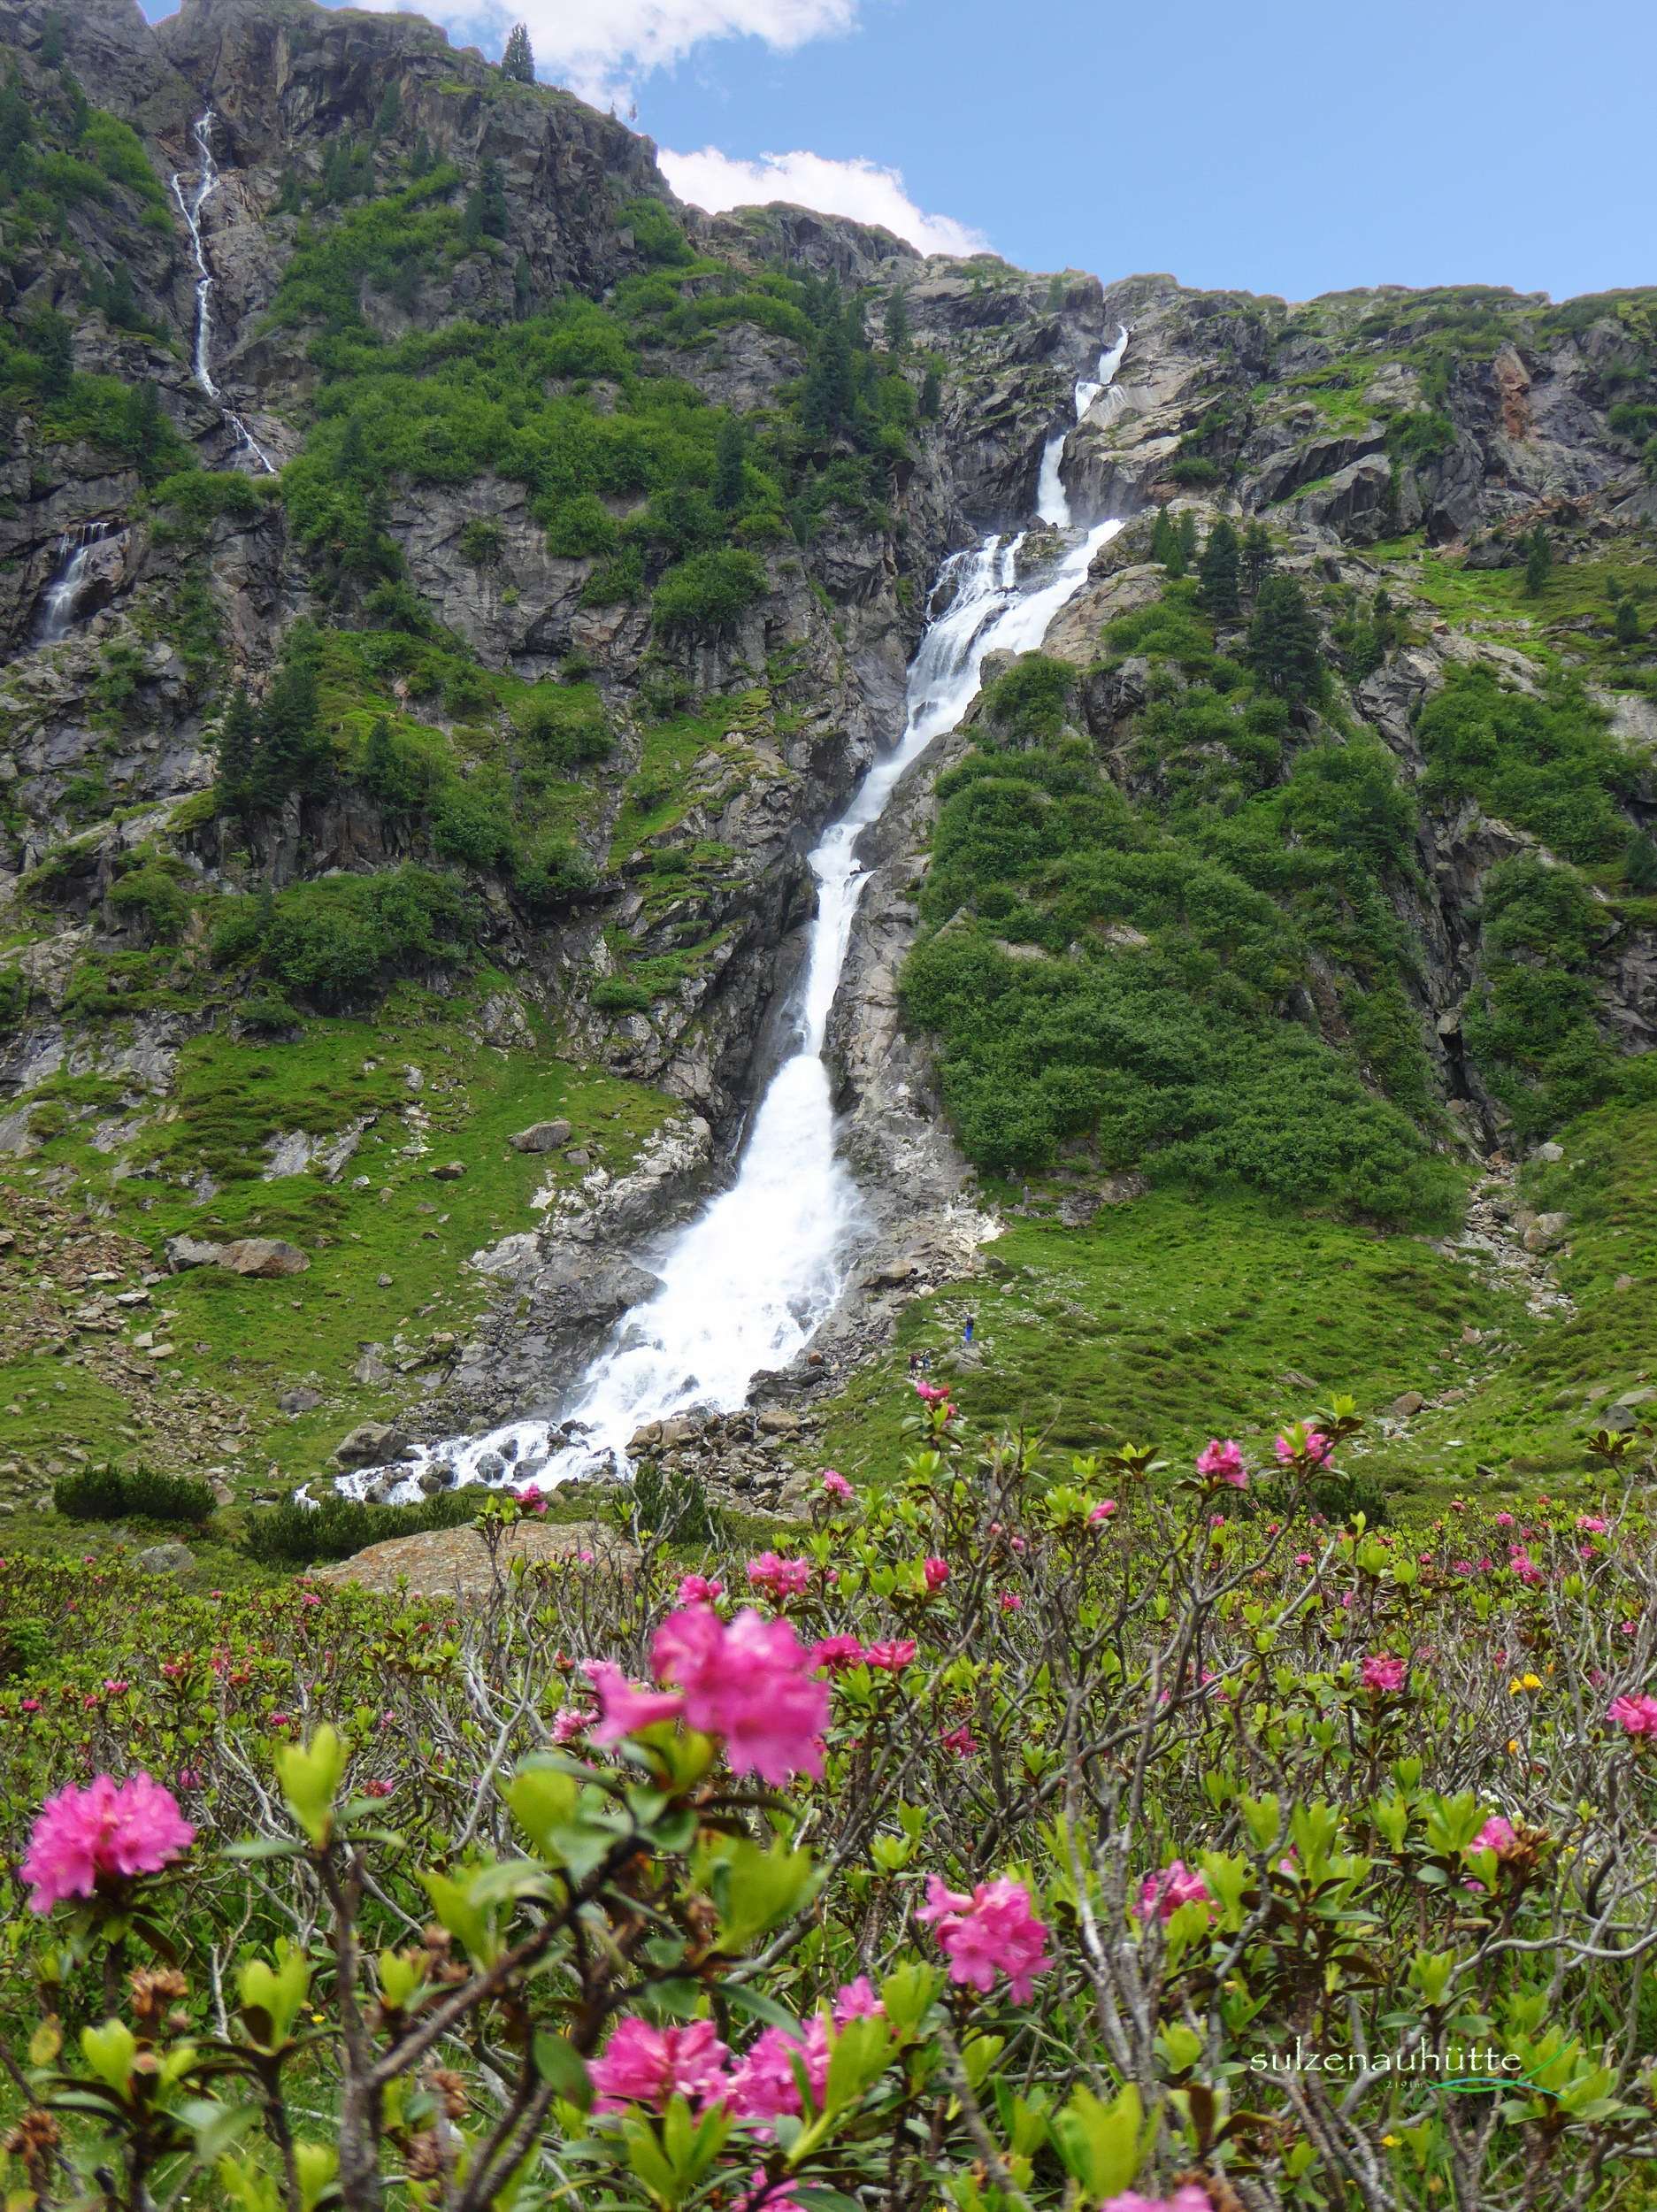 WildeWasserWeg - Wasserfall unter Sulzenauhütte